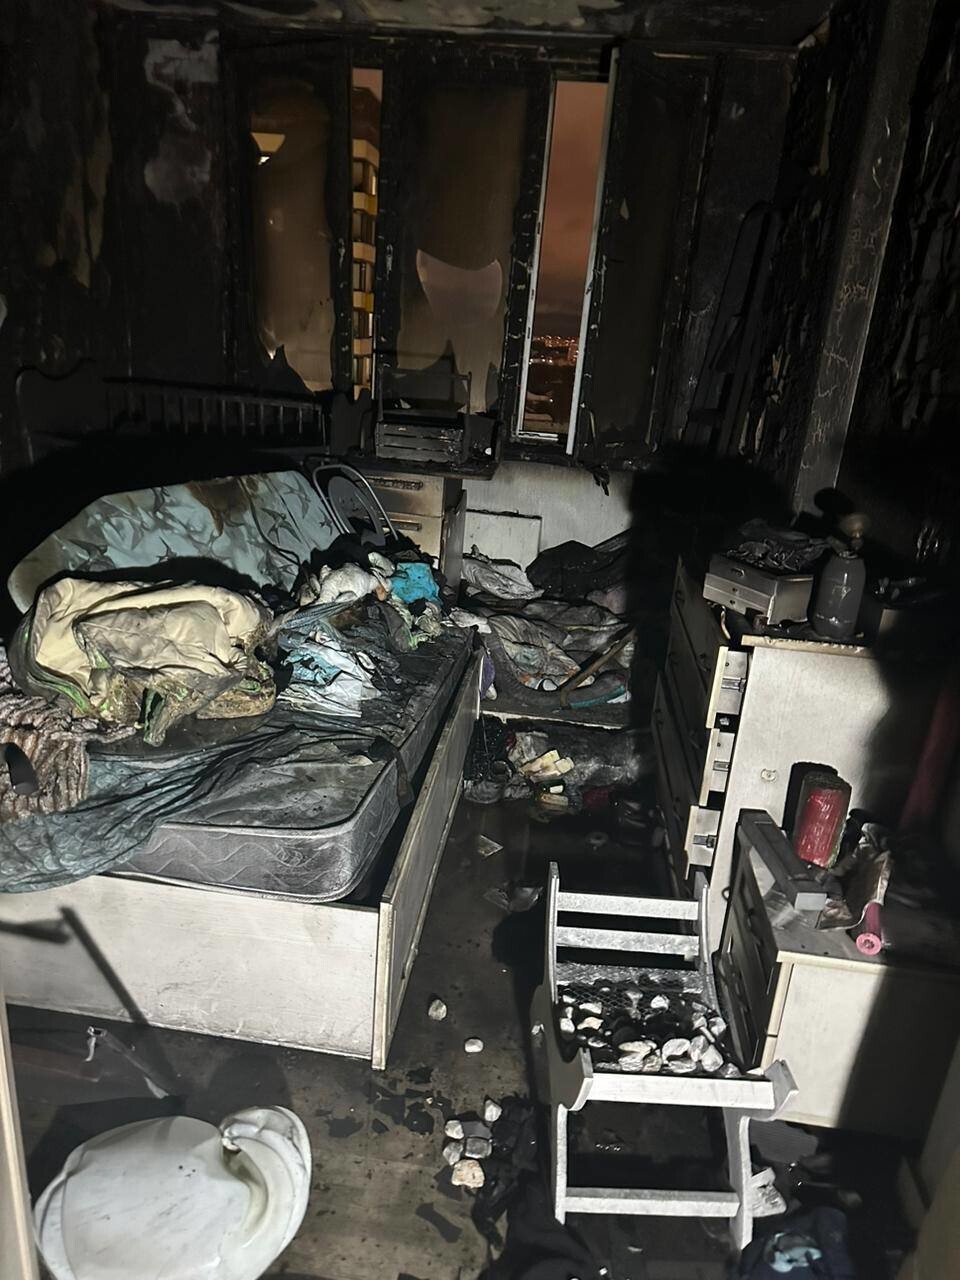 Пожарные машины в Подмосковье не могли подъехать к дому с горящей квартирой из-за припаркованных авто. Женщина и трехлетний ребёнок погибли